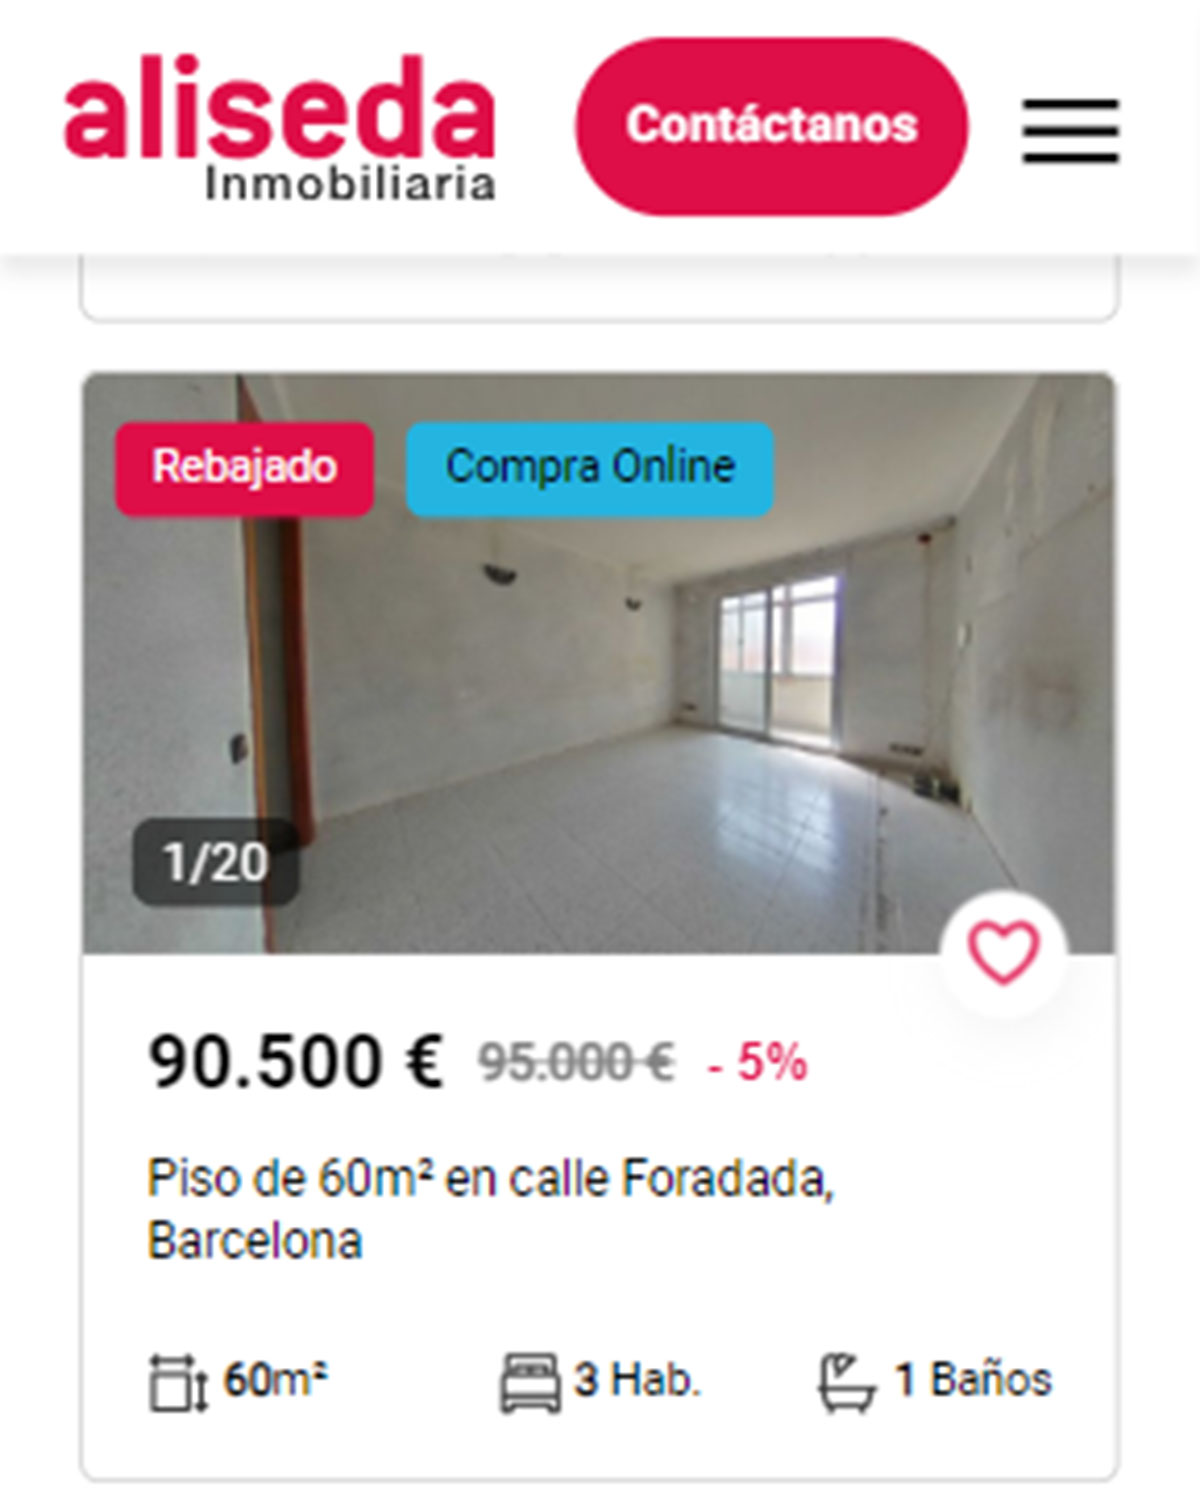 Piso en Barcelona por 90.600 euros